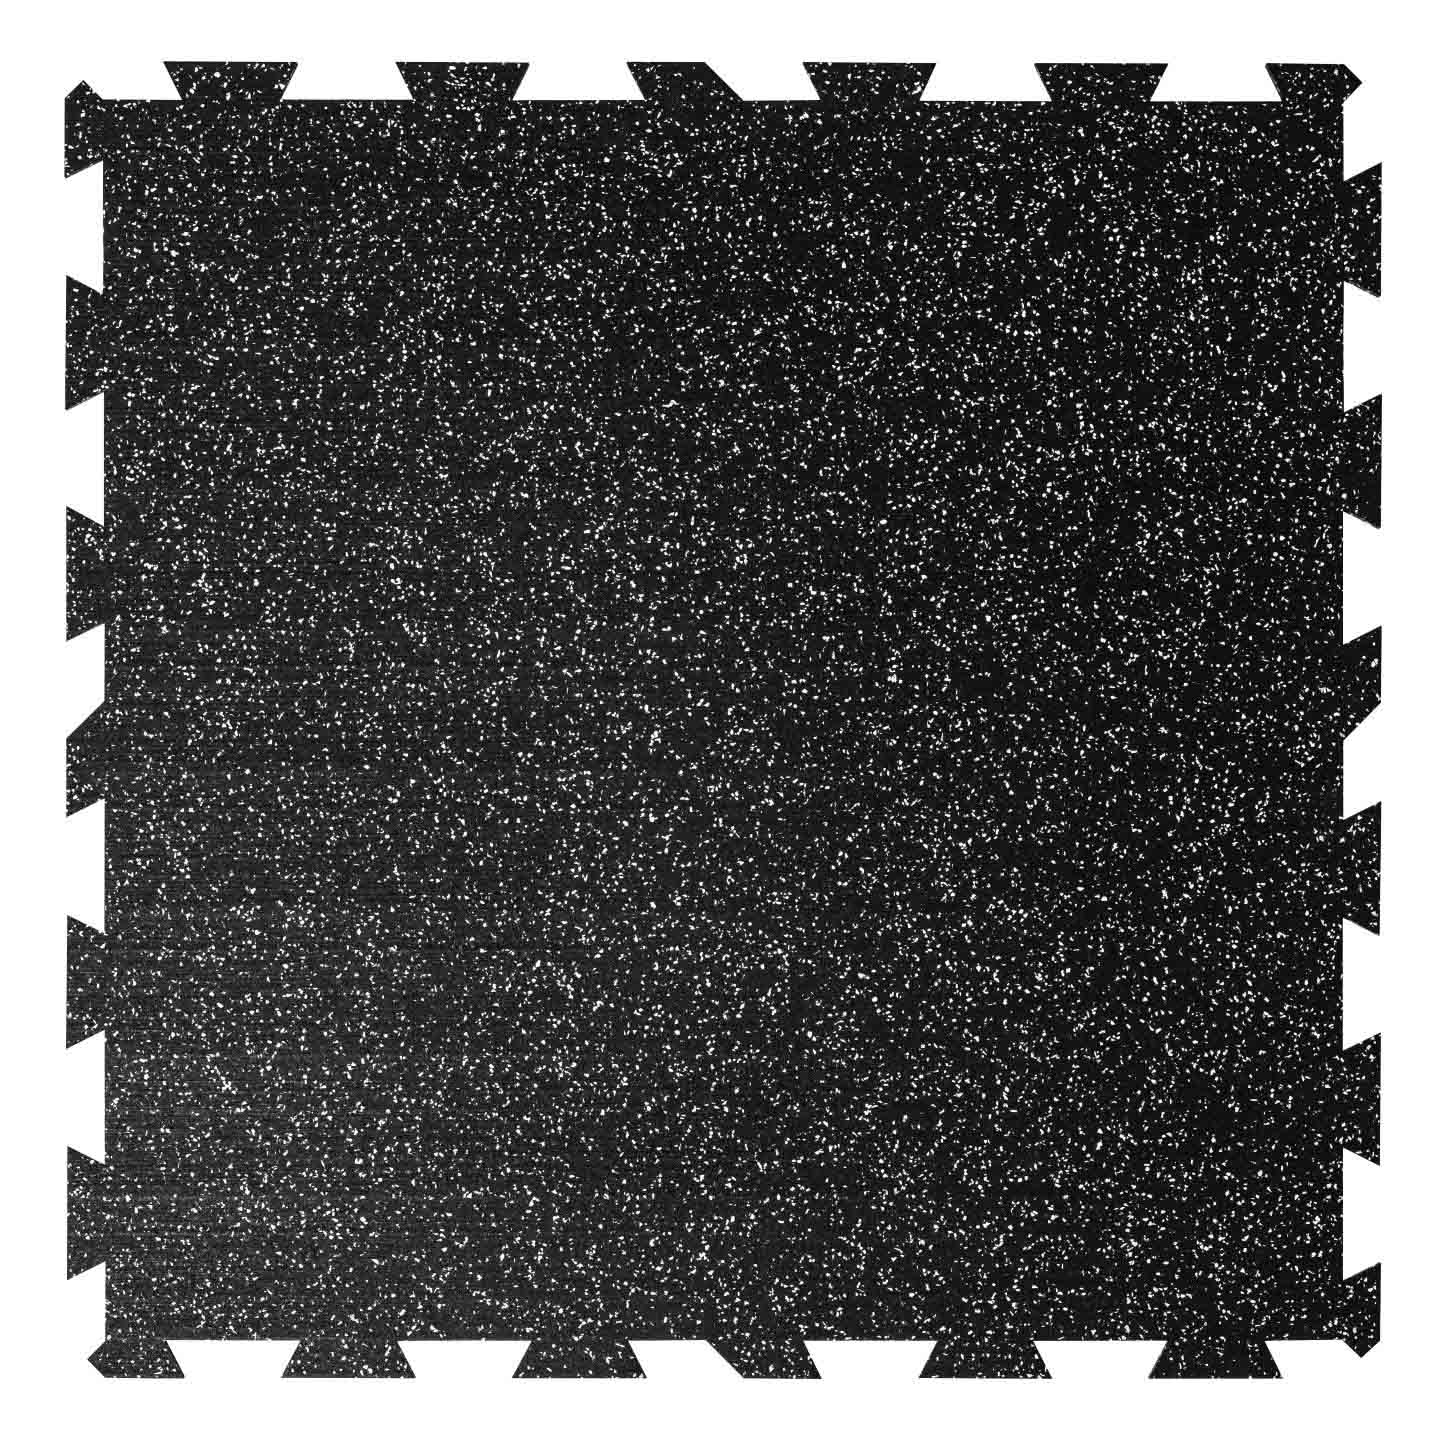 Podlaha PUZZLE PROFI CF 8 mm / 100x100 / černo-bílá 10%